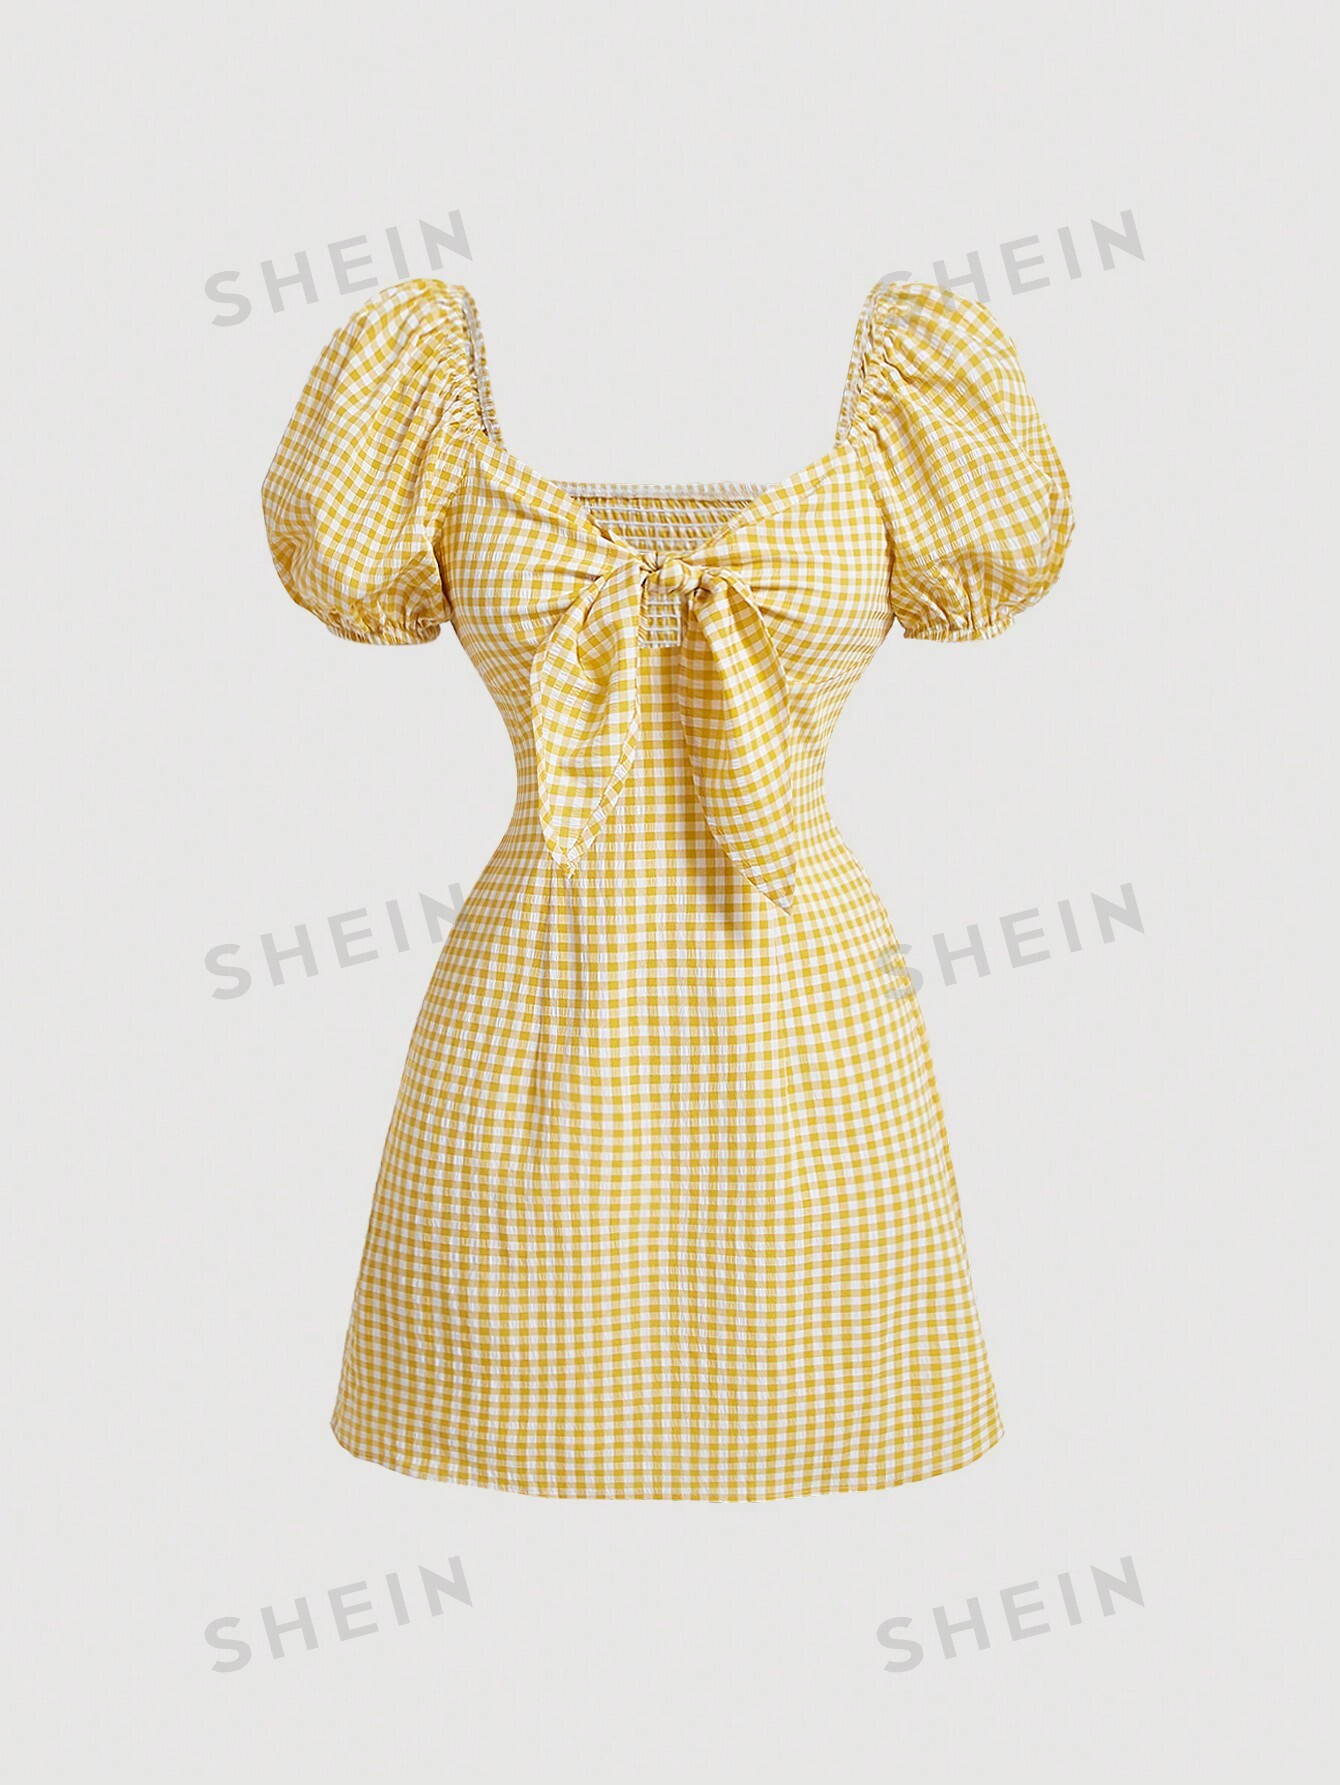 SHEIN MOD Желтое клетчатое платье в стиле ретро с пышными рукавами, желтый